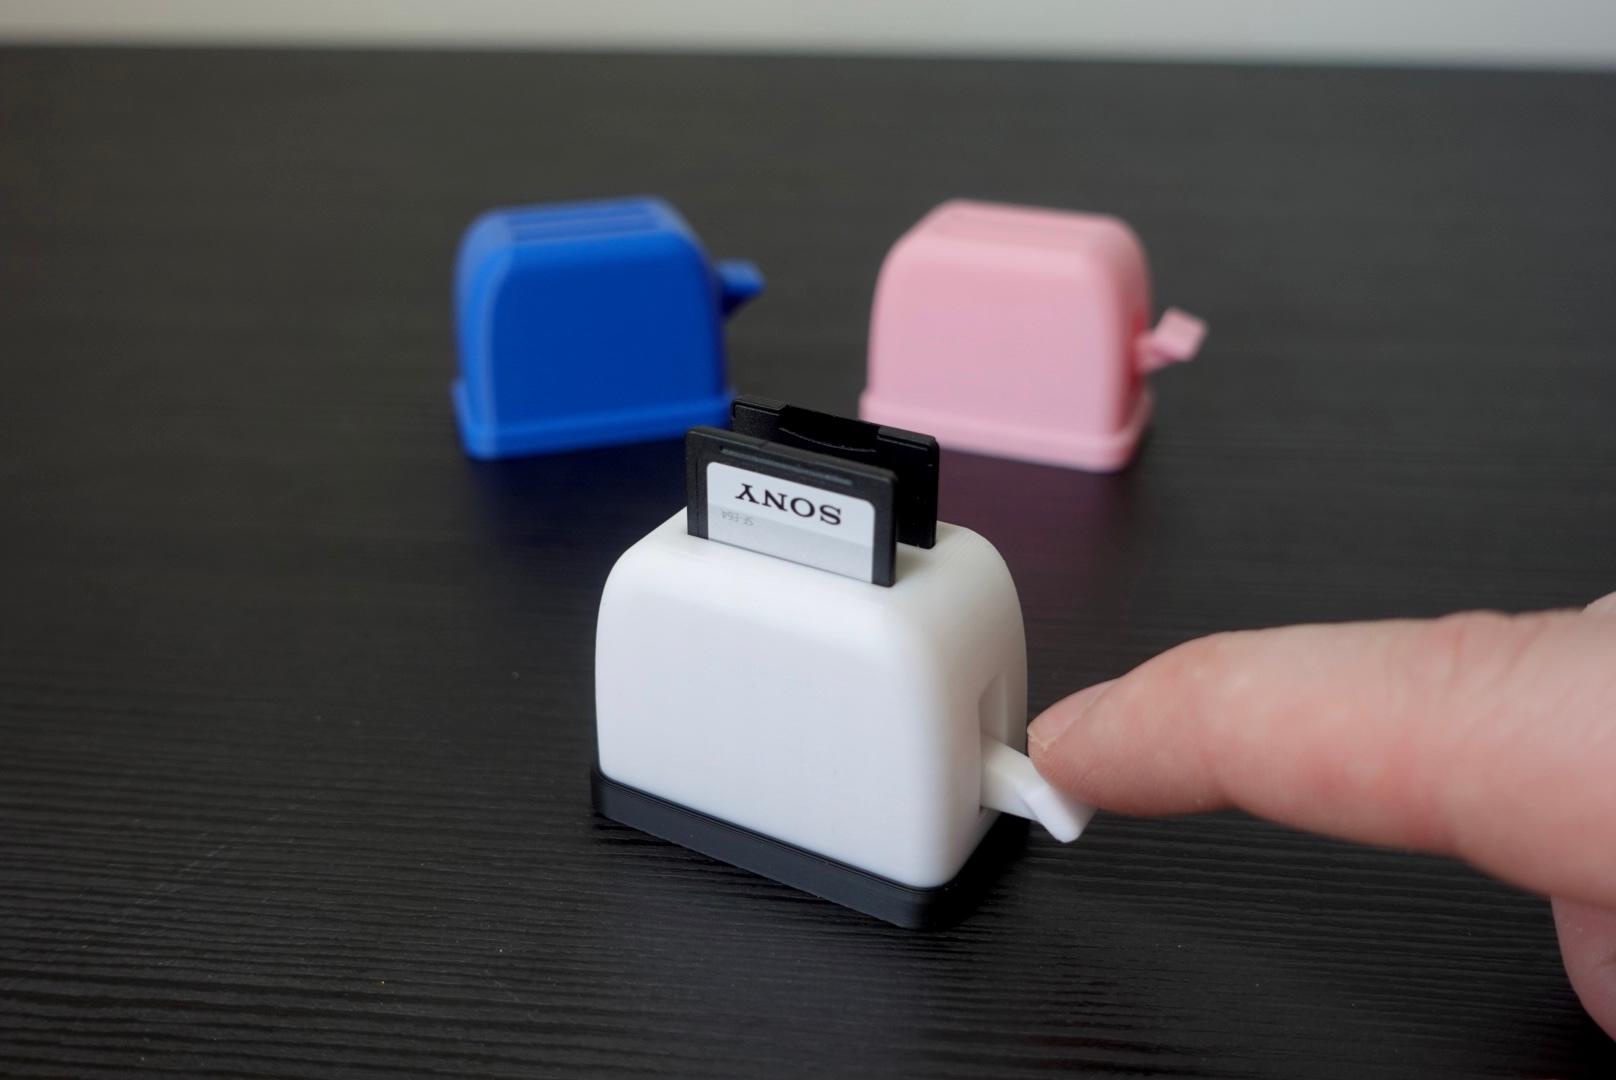 Mini Toaster (SD Card Holder) 3d model